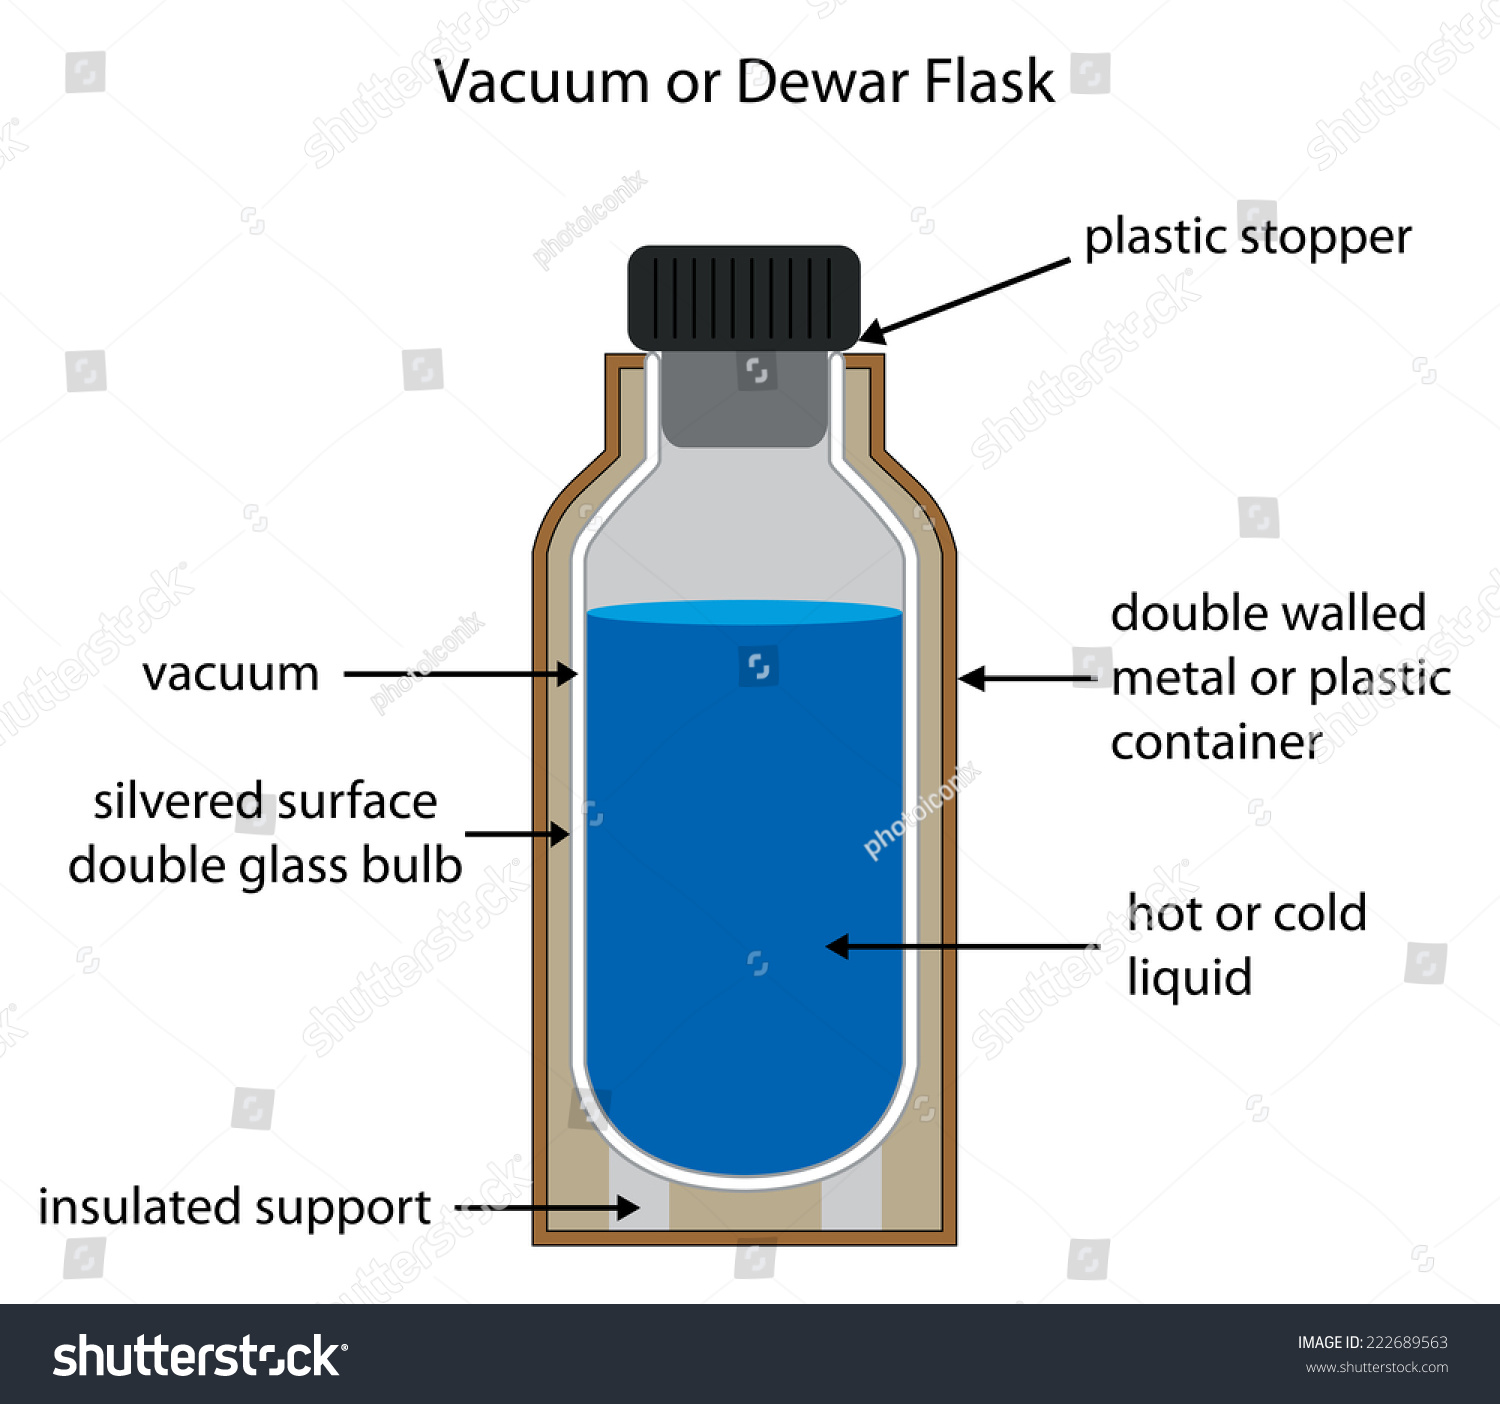 Dewar Vacuum Flask Fully Labelled 